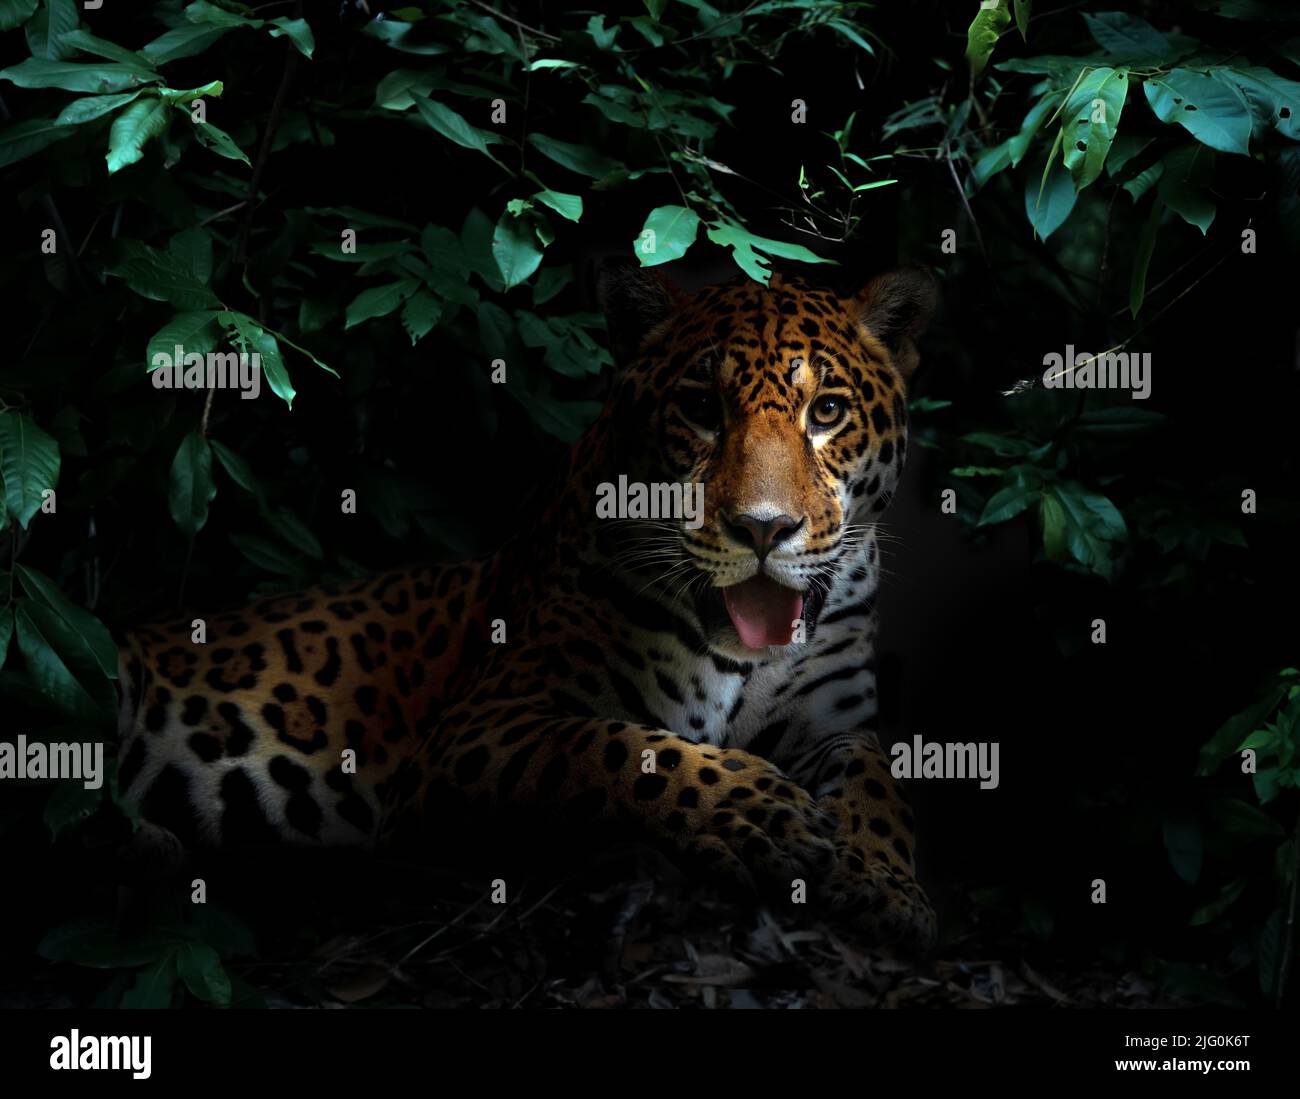 jaguar en la selva tropical en la noche fondo oscuro Foto de stock